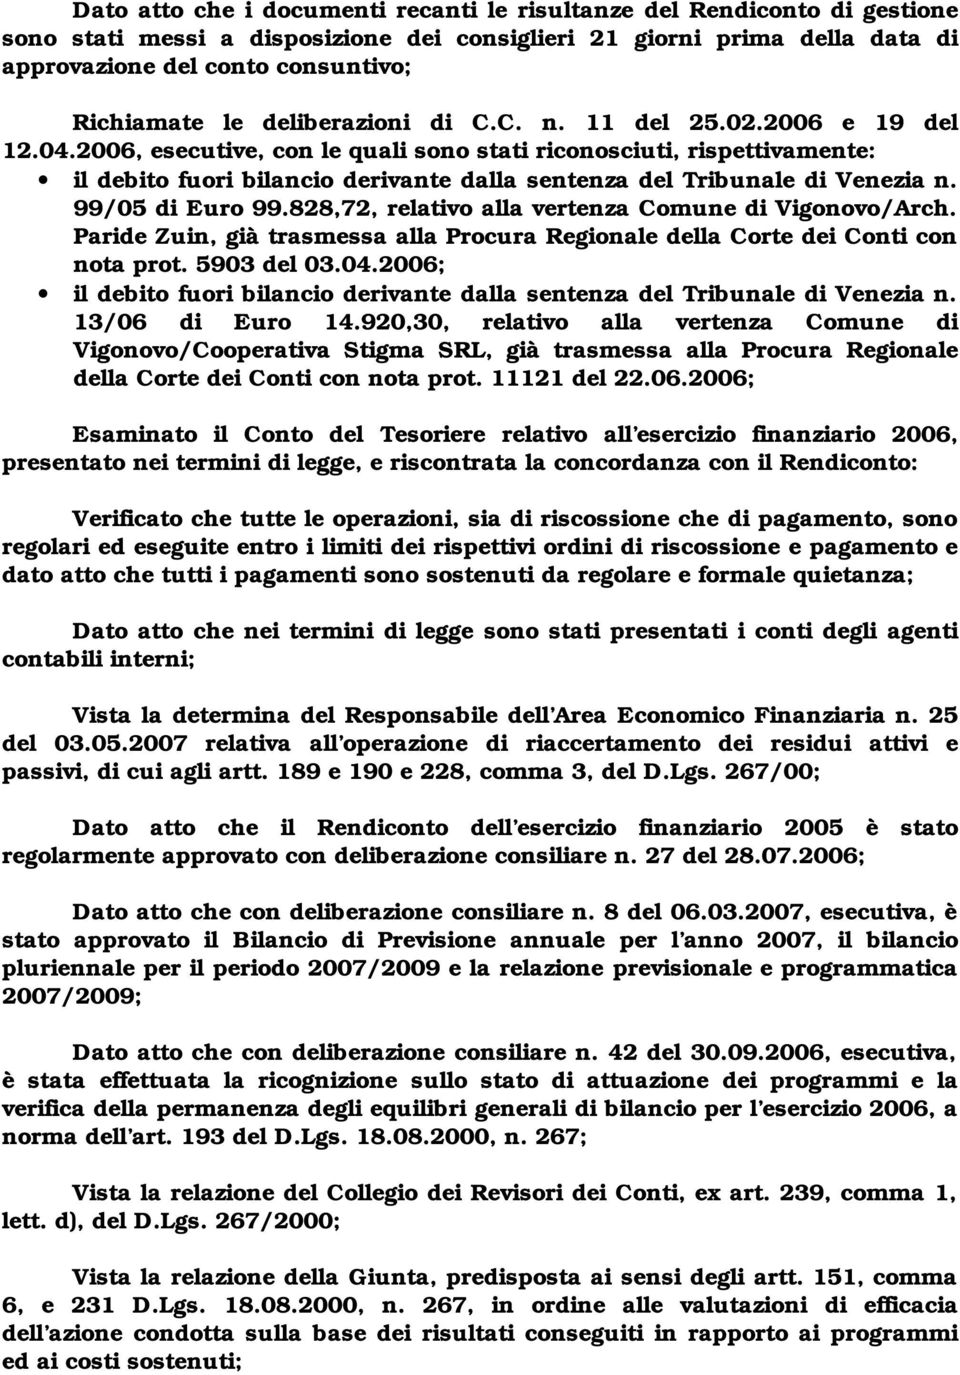 2006, esecutive, con le quali sono stati riconosciuti, rispettivamente: il debito fuori bilancio derivante dalla sentenza del Tribunale di Venezia n. 99/05 di Euro 99.